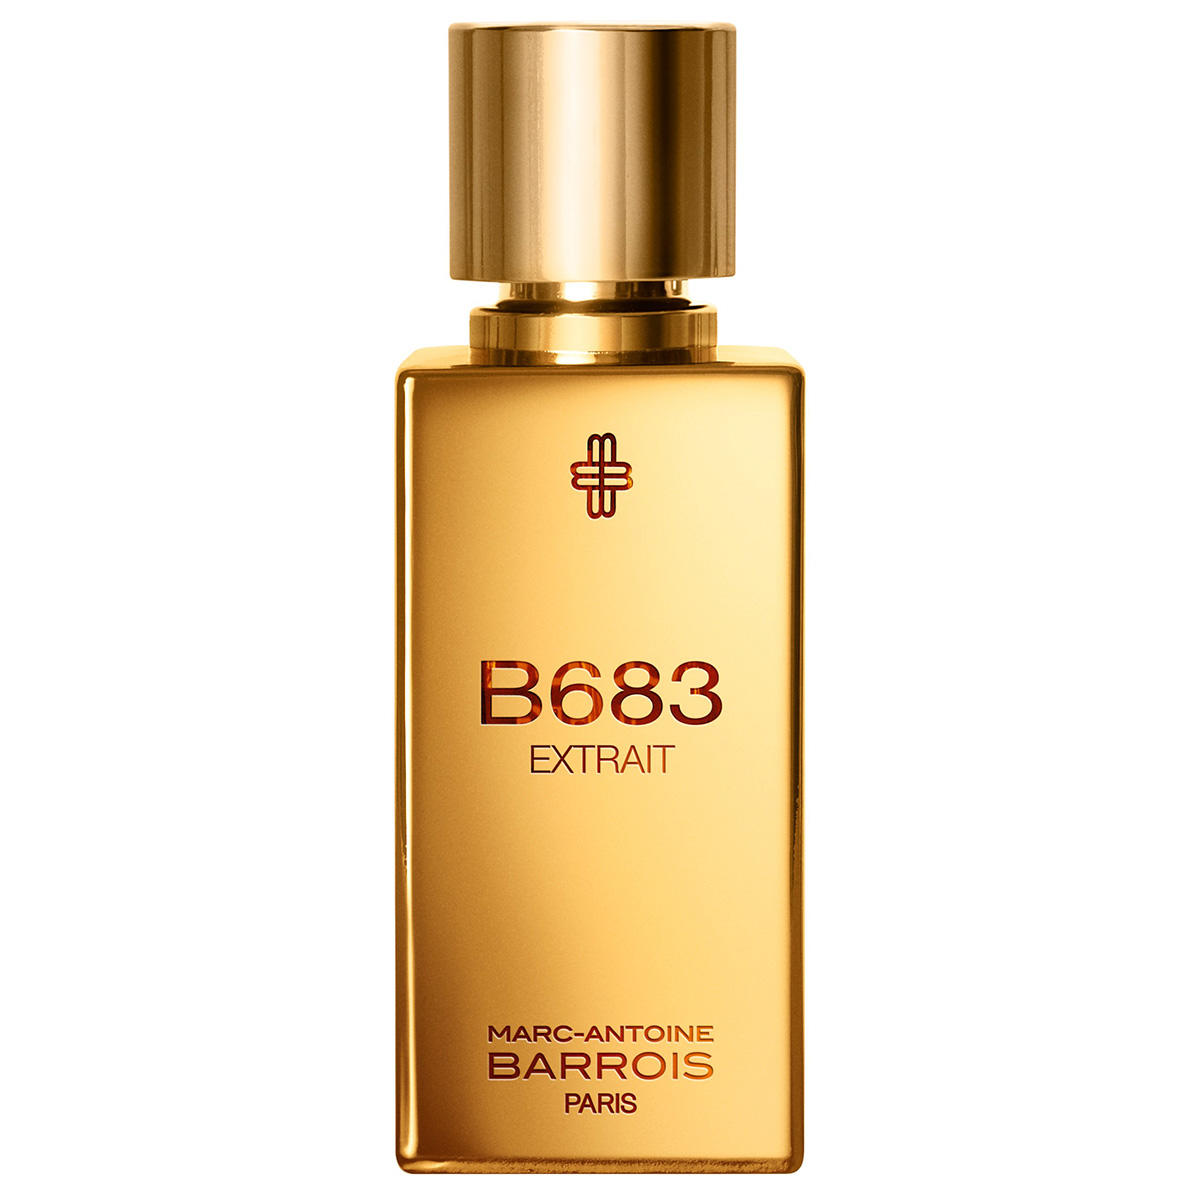 Marc-Antoine Barrois B683 Extrait de Parfum 50 ml - 1